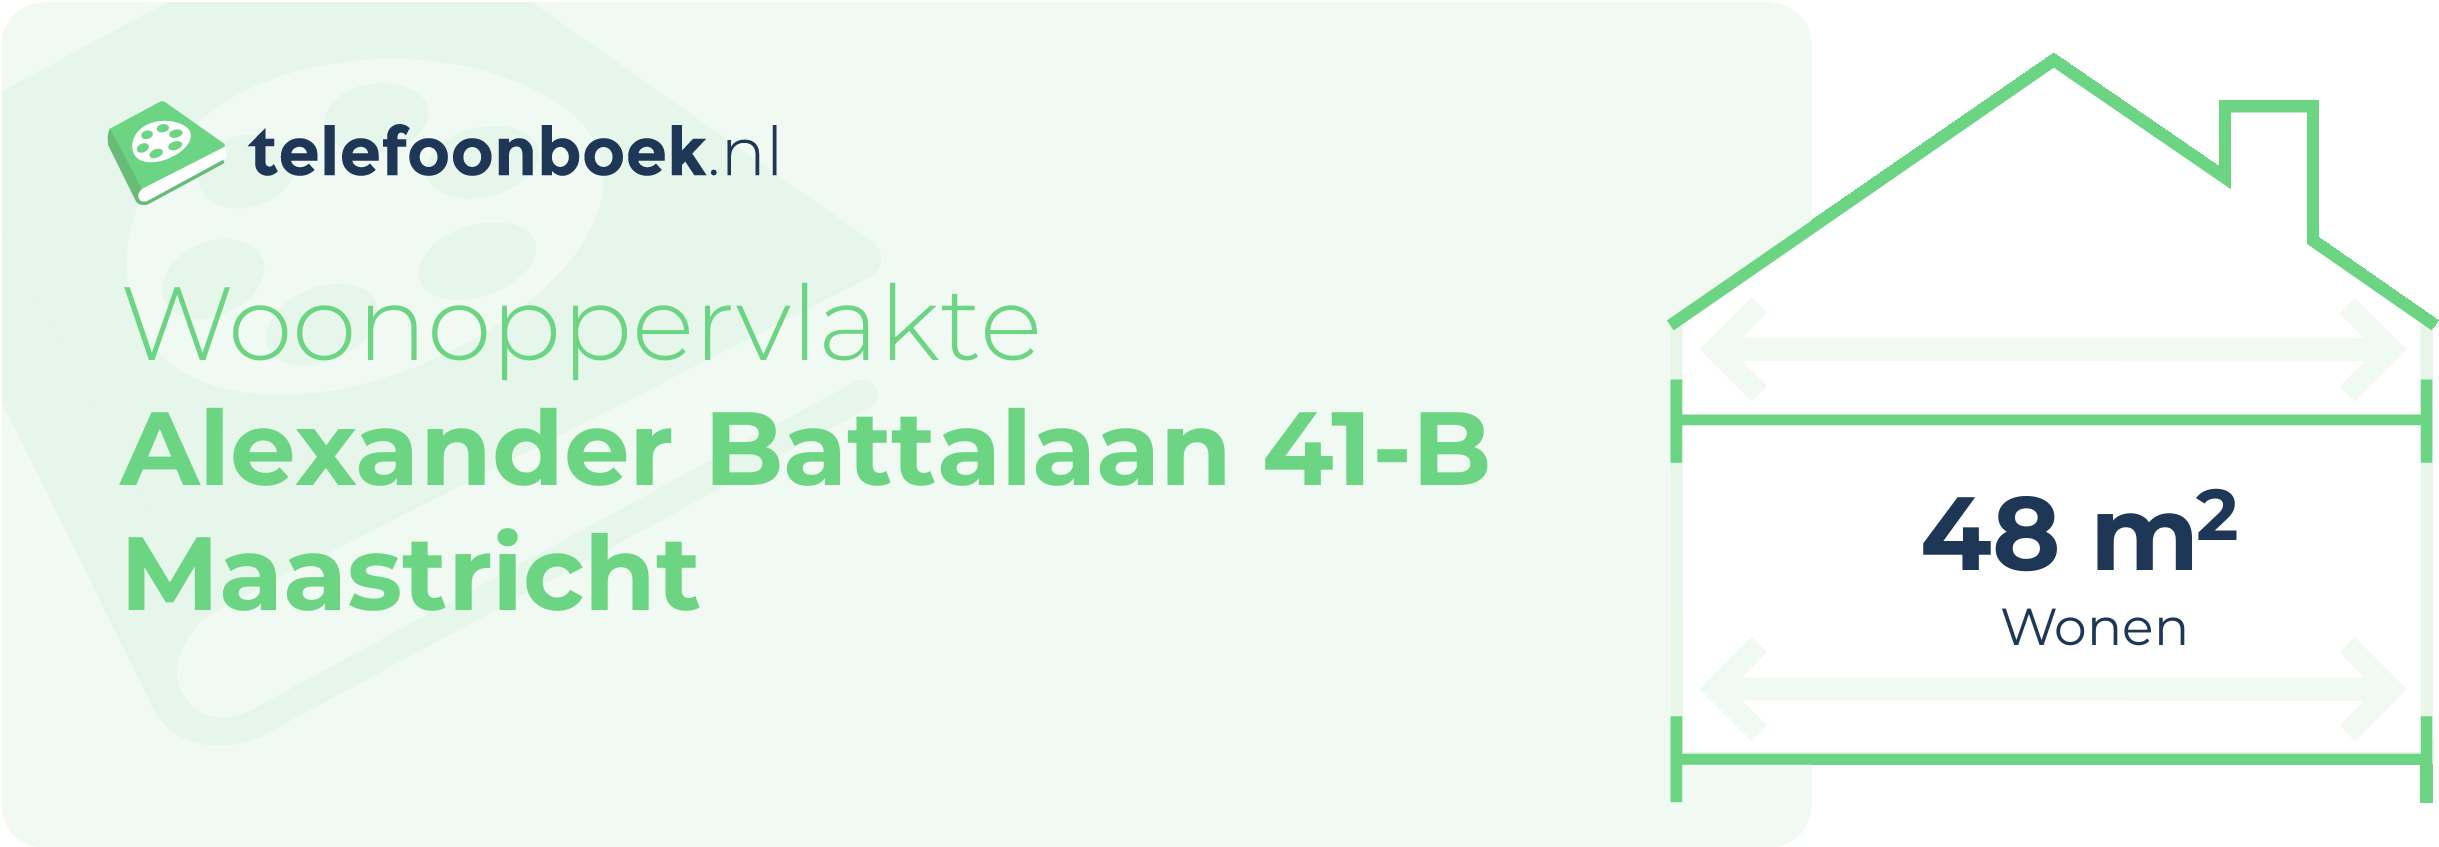 Woonoppervlakte Alexander Battalaan 41-B Maastricht